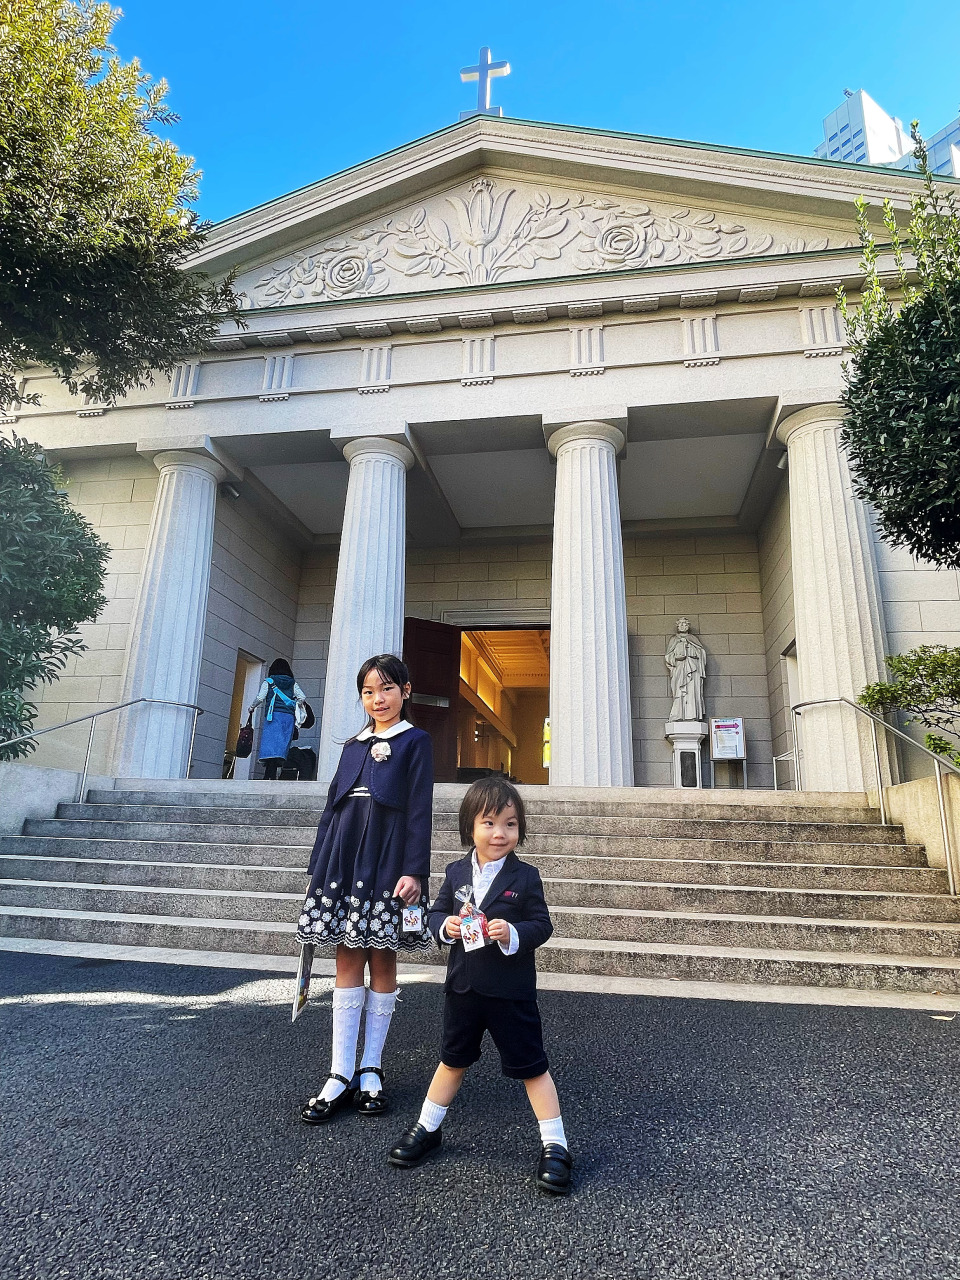 ■在教堂庆祝 “七五三” 节日的日本儿童。